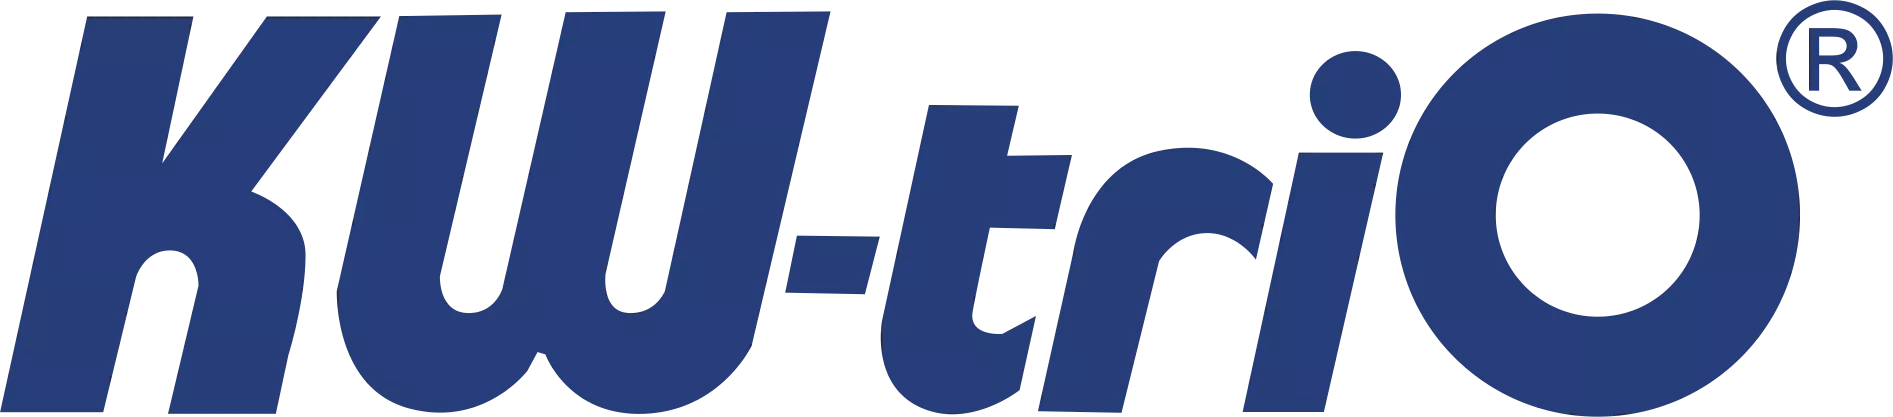 KW-trio logo